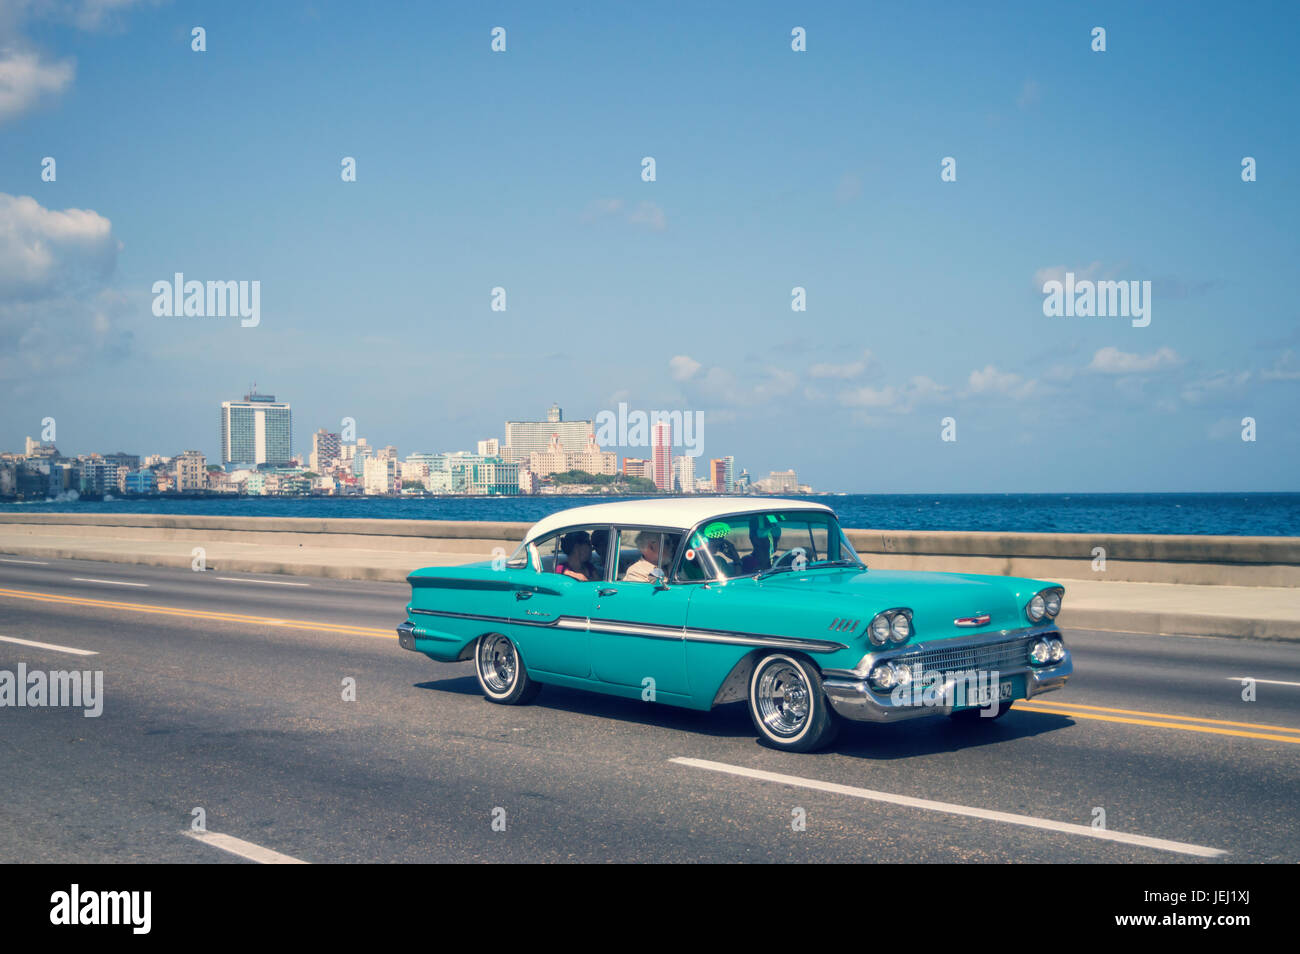 L'Avana, Cuba - 18 Aprile: Blu vecchie automobili classiche sul Malecon, l'iconica del lungomare, il 18 Aprile 2016i a l'Avana Foto Stock